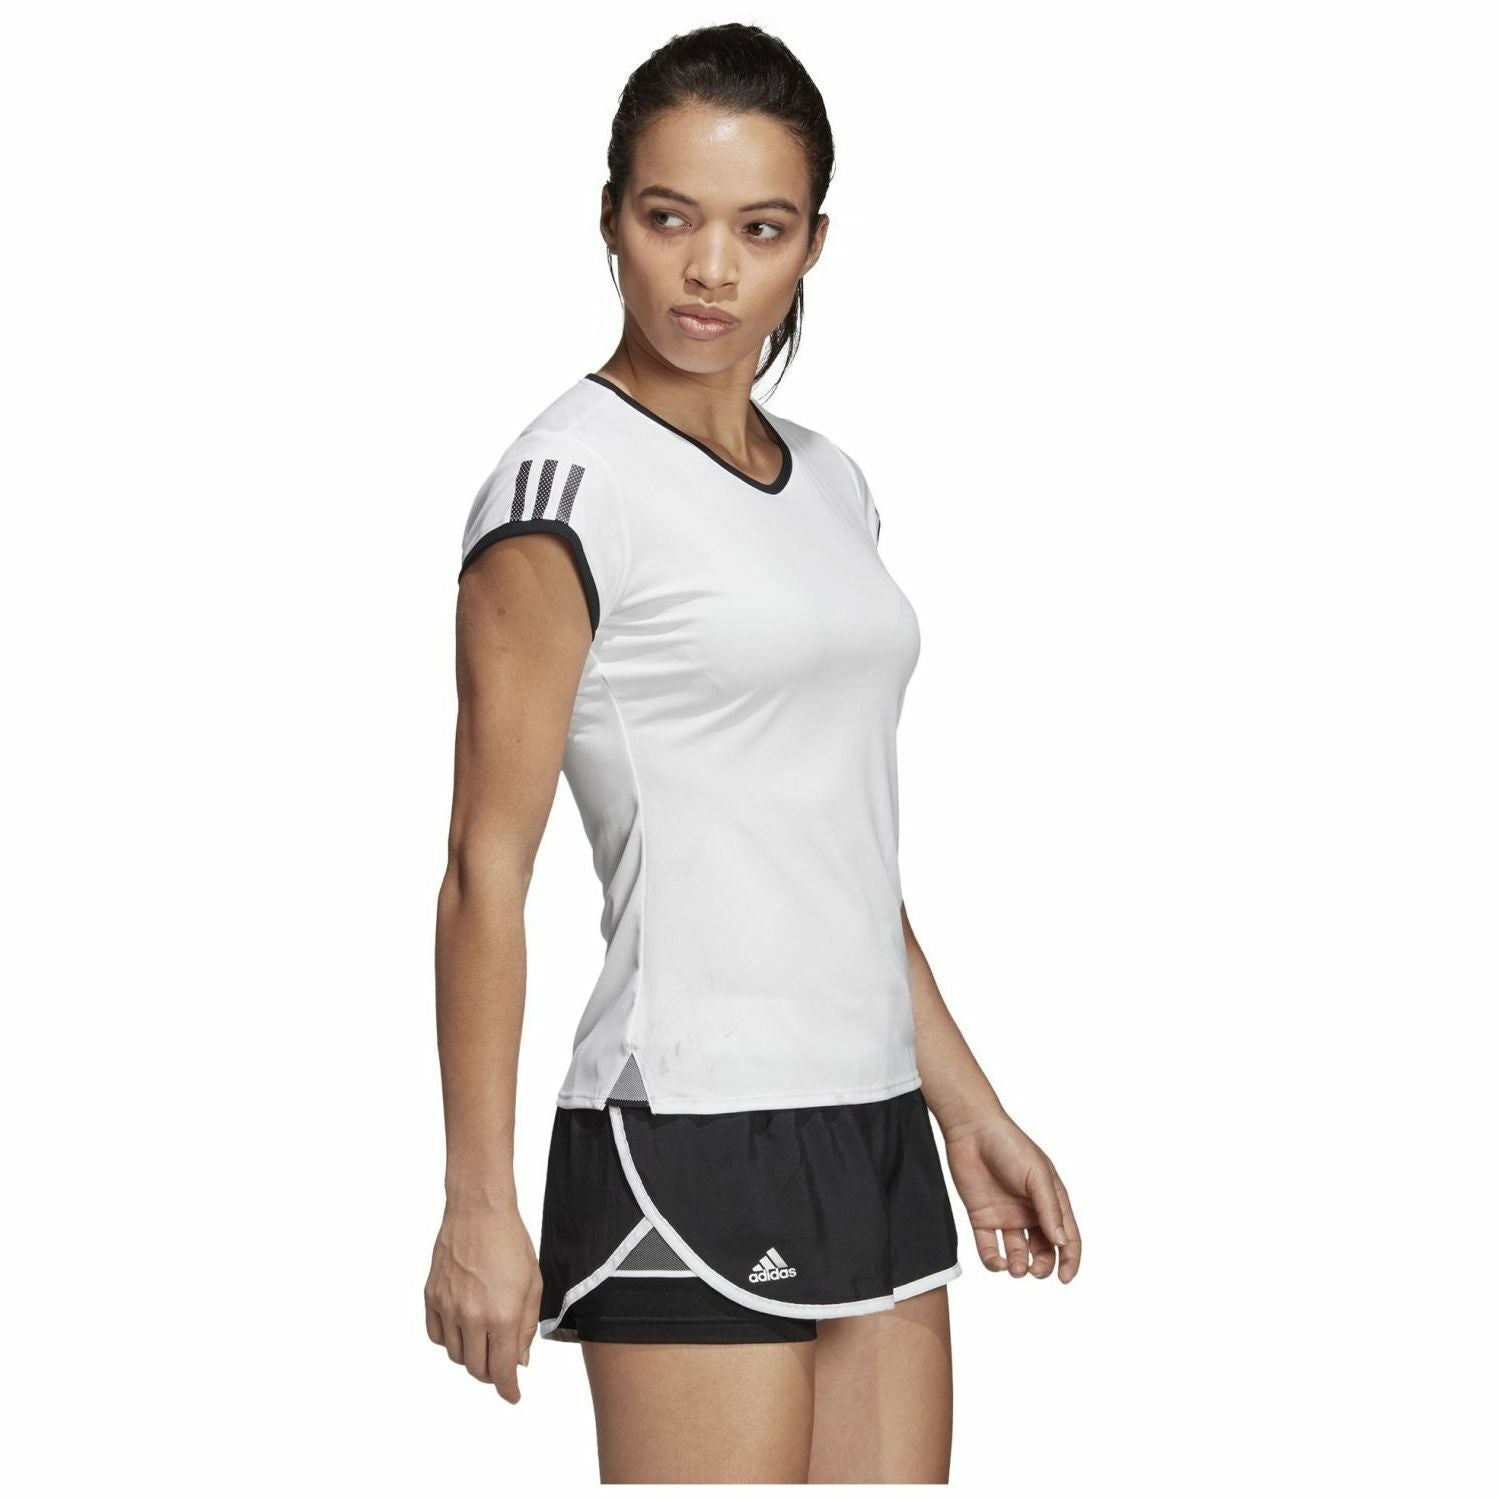 Adidas Women's 3-Stripes Club T-shirt